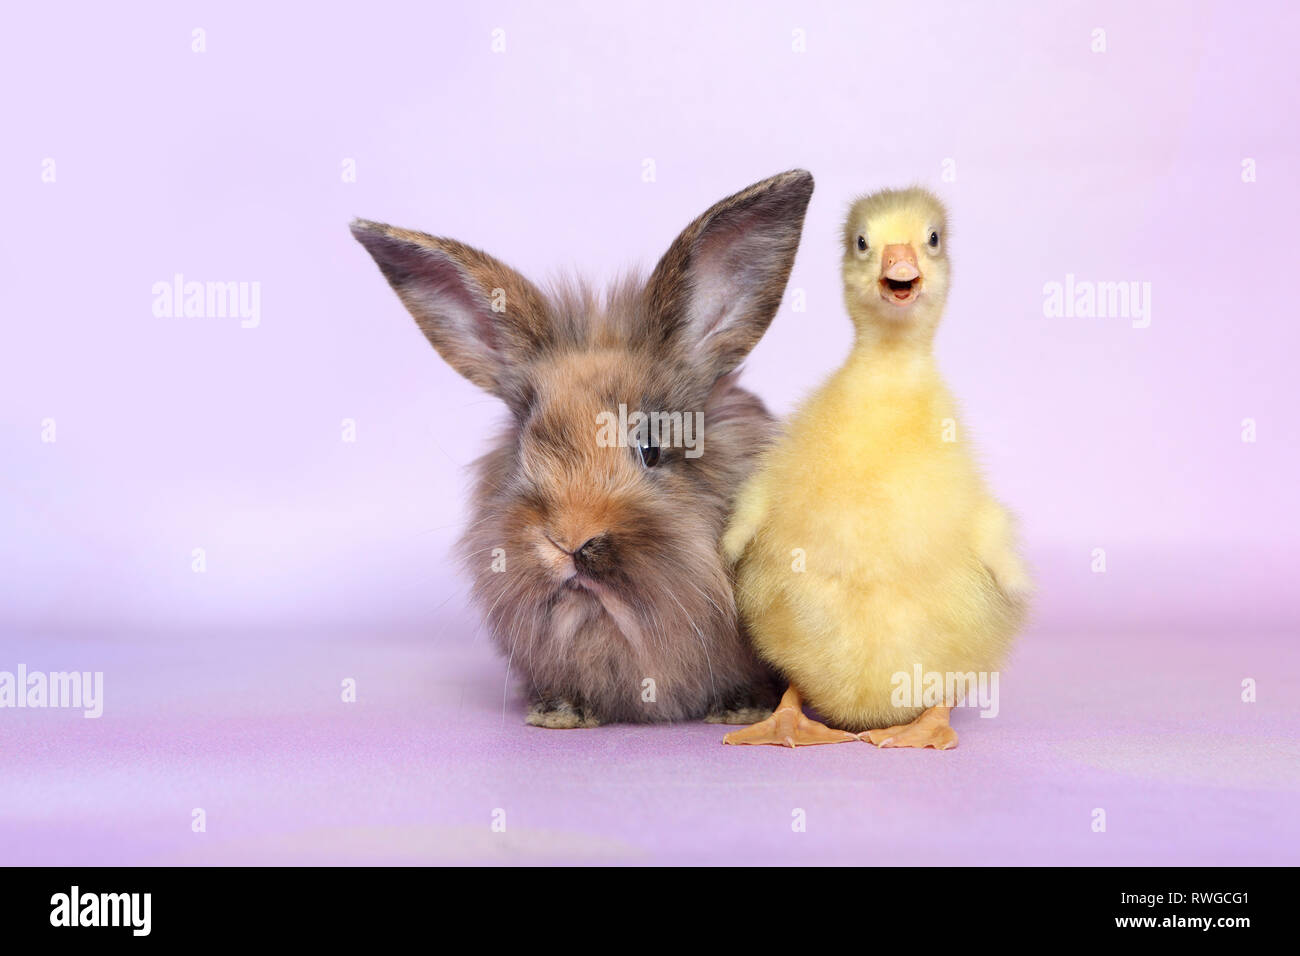 L'oie domestique. Gosling debout à côté de lapin nain adultes. Studio photo, vue sur un fond violet. Allemagne Banque D'Images